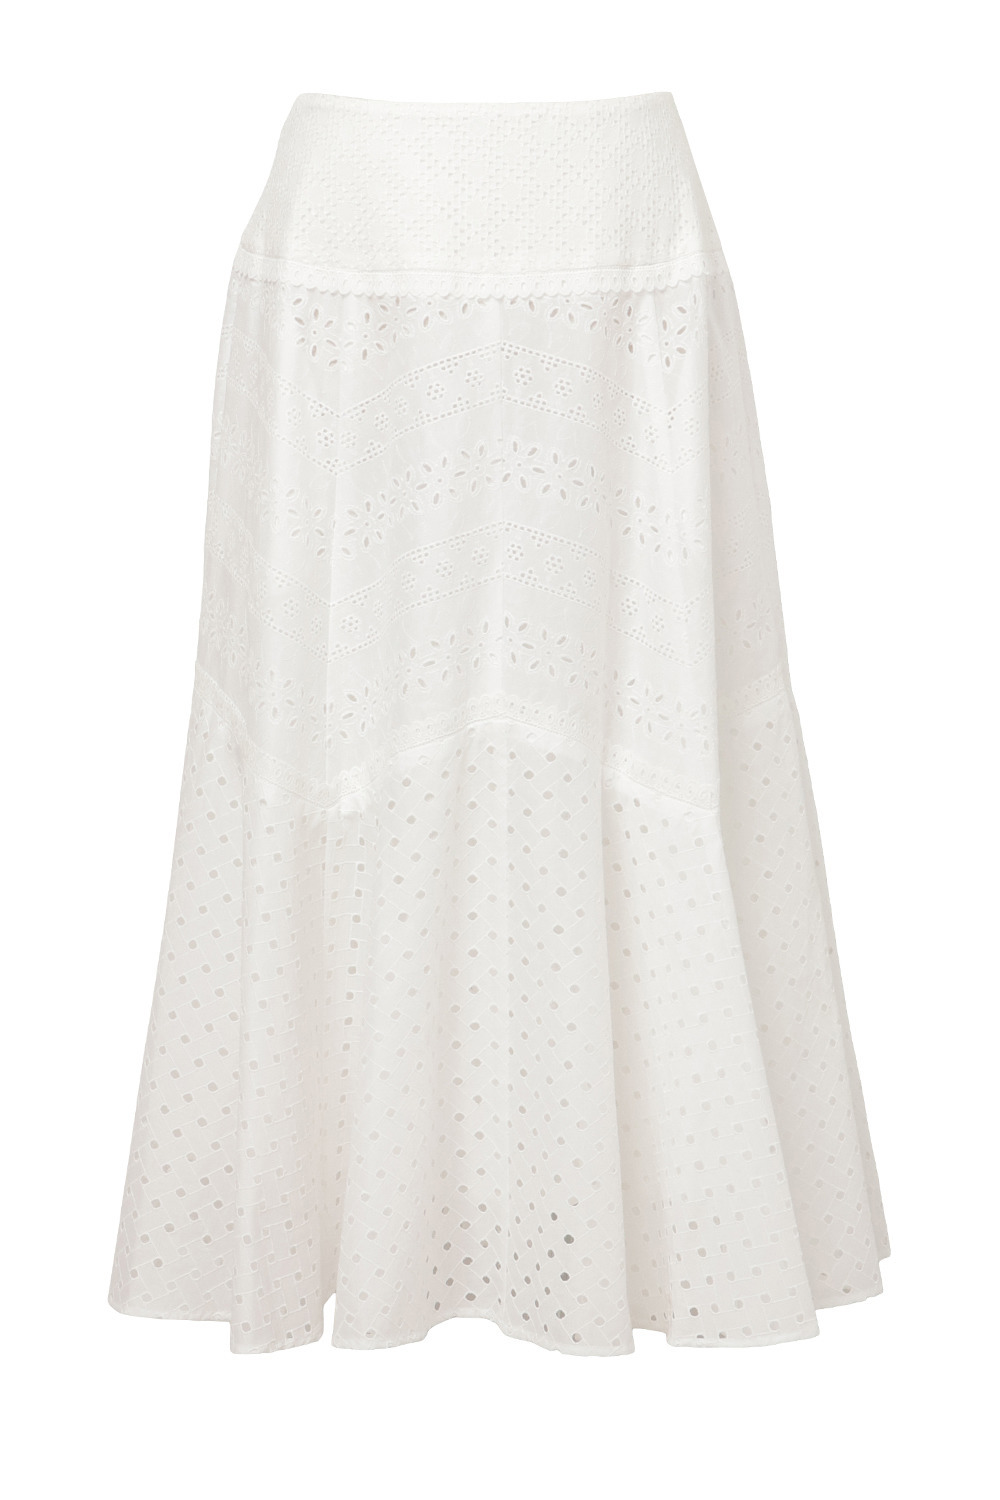 Cotton Lace Patchwork スカート 詳細画像 ホワイト